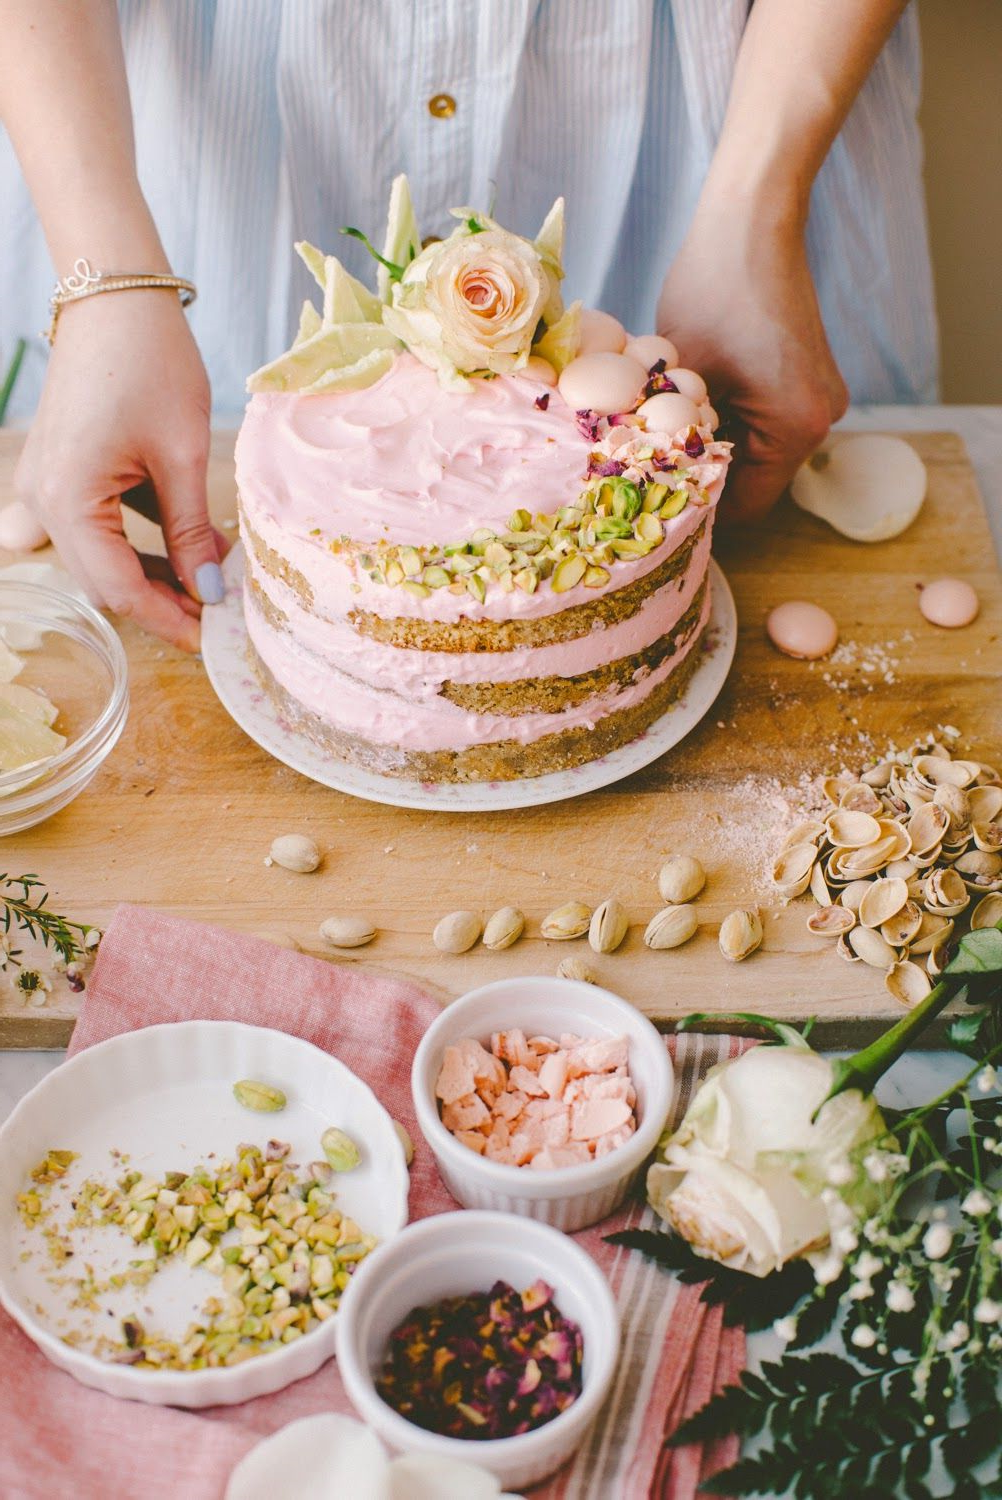 Comment décorer facilement un gâteau nu?